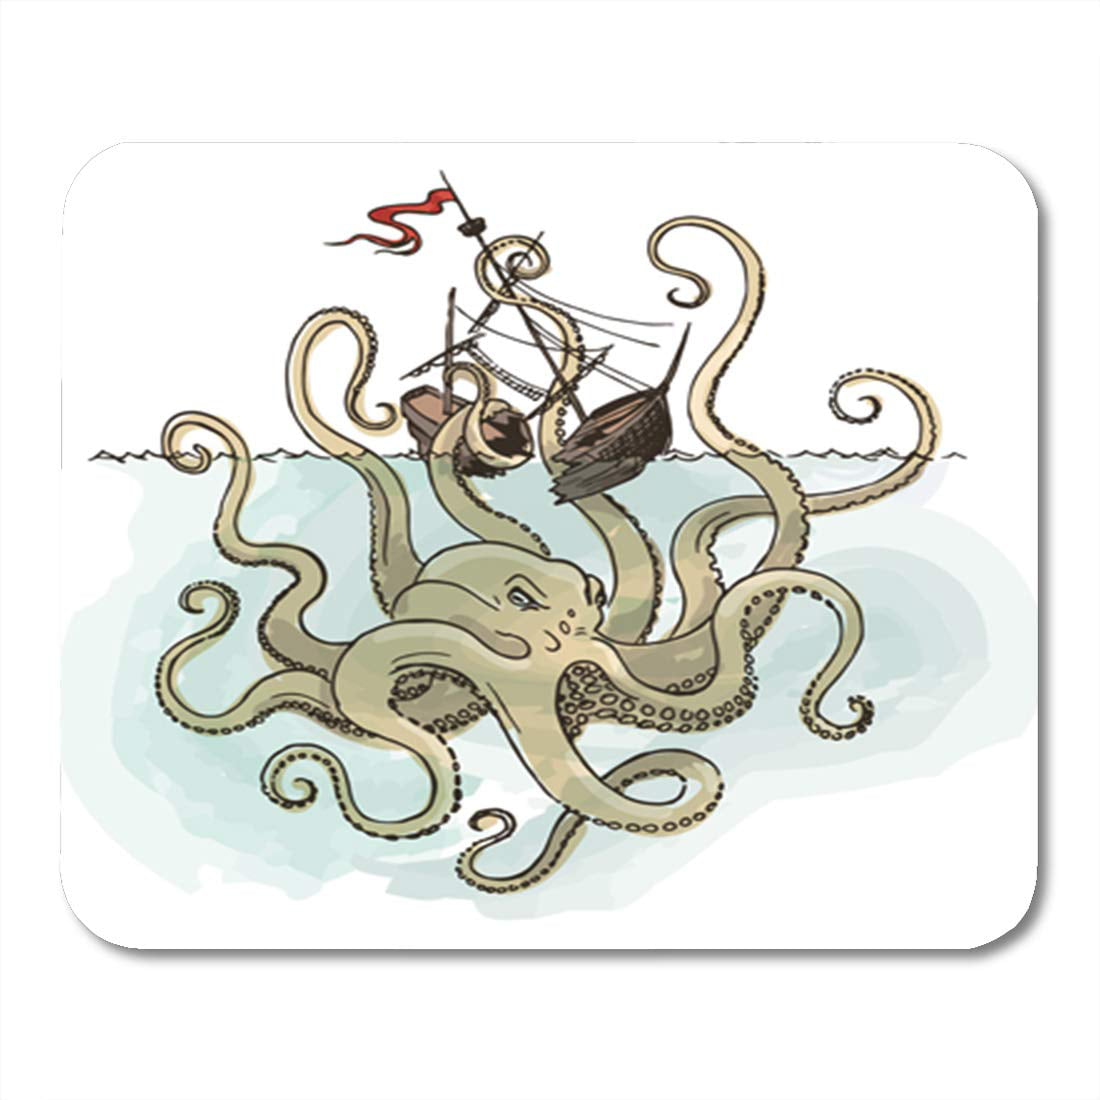 JSDART Ship Sketch of Vessel and Kraken Monster Octopus Tapis de souris  grec Tapis de souris Tapis de souris 22,9 x 25,4 cm